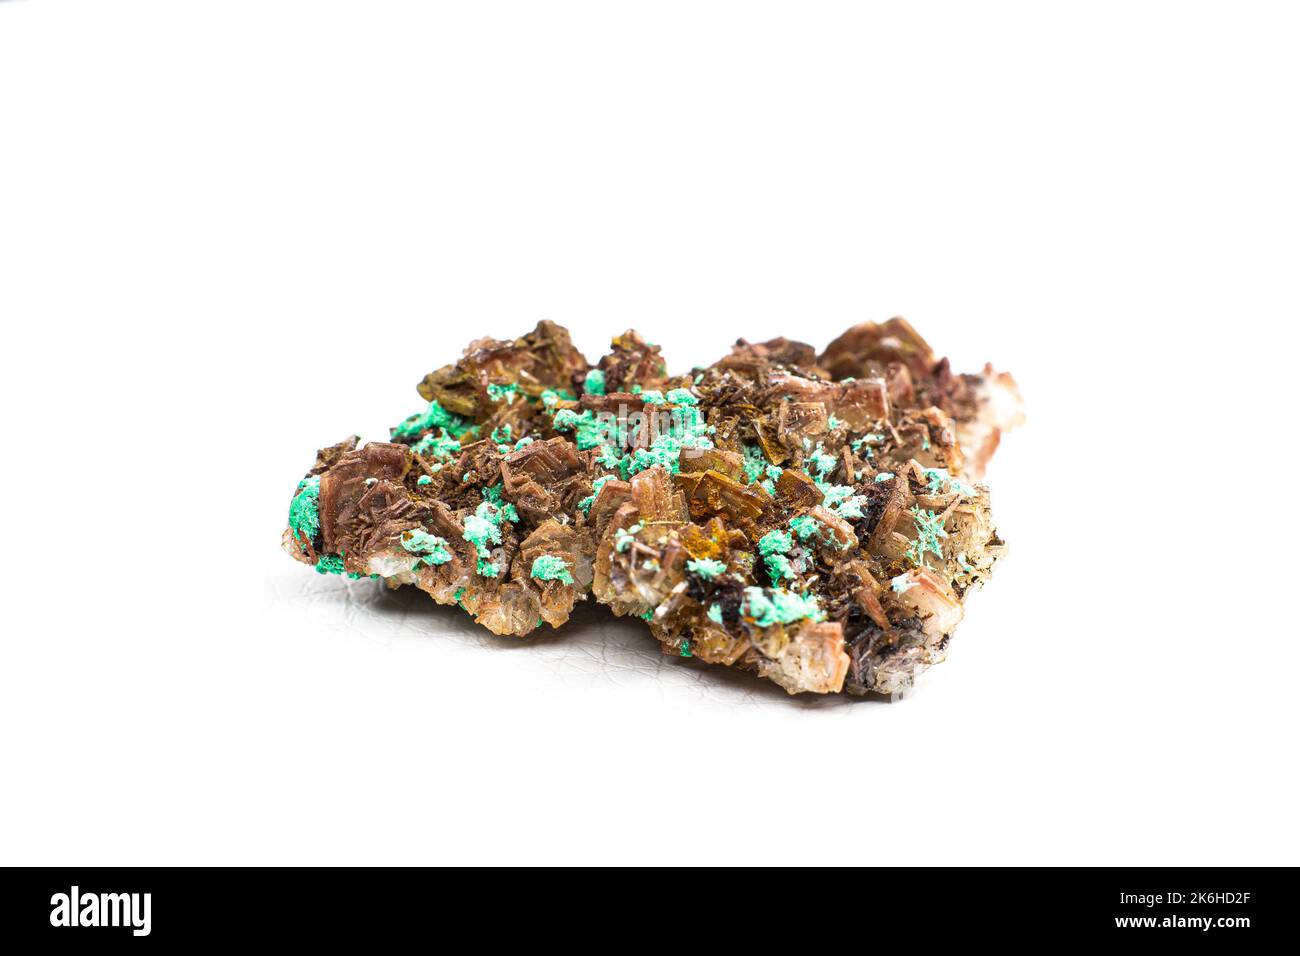 Echter brauner Albit-Kristallhaufen mit kleinen hellgrünen Malachit-Clustern, isoliert auf Weiß. Makro Stockfoto